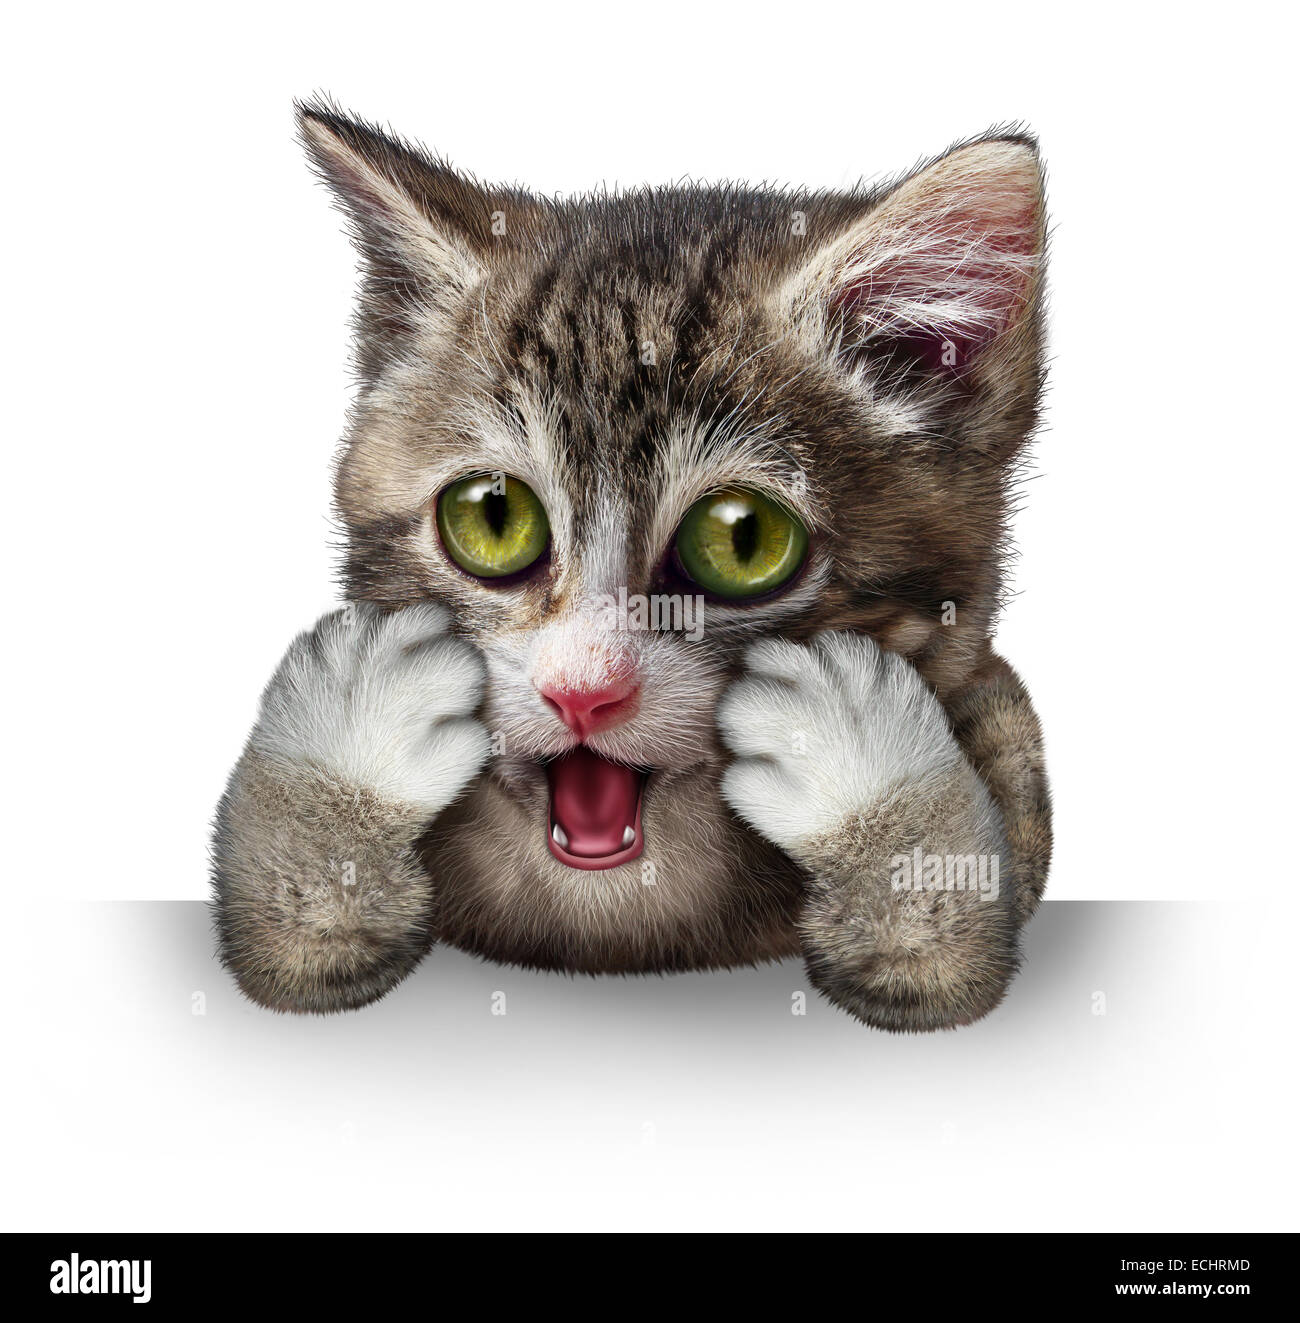 Cat-Figur als ein reinrassiges Kätzchen mit einem anthropomorphen Ausdruck der Angst auf einem horizontalen leere Schild auf einem weißen Hintergrund überrascht. Stockfoto